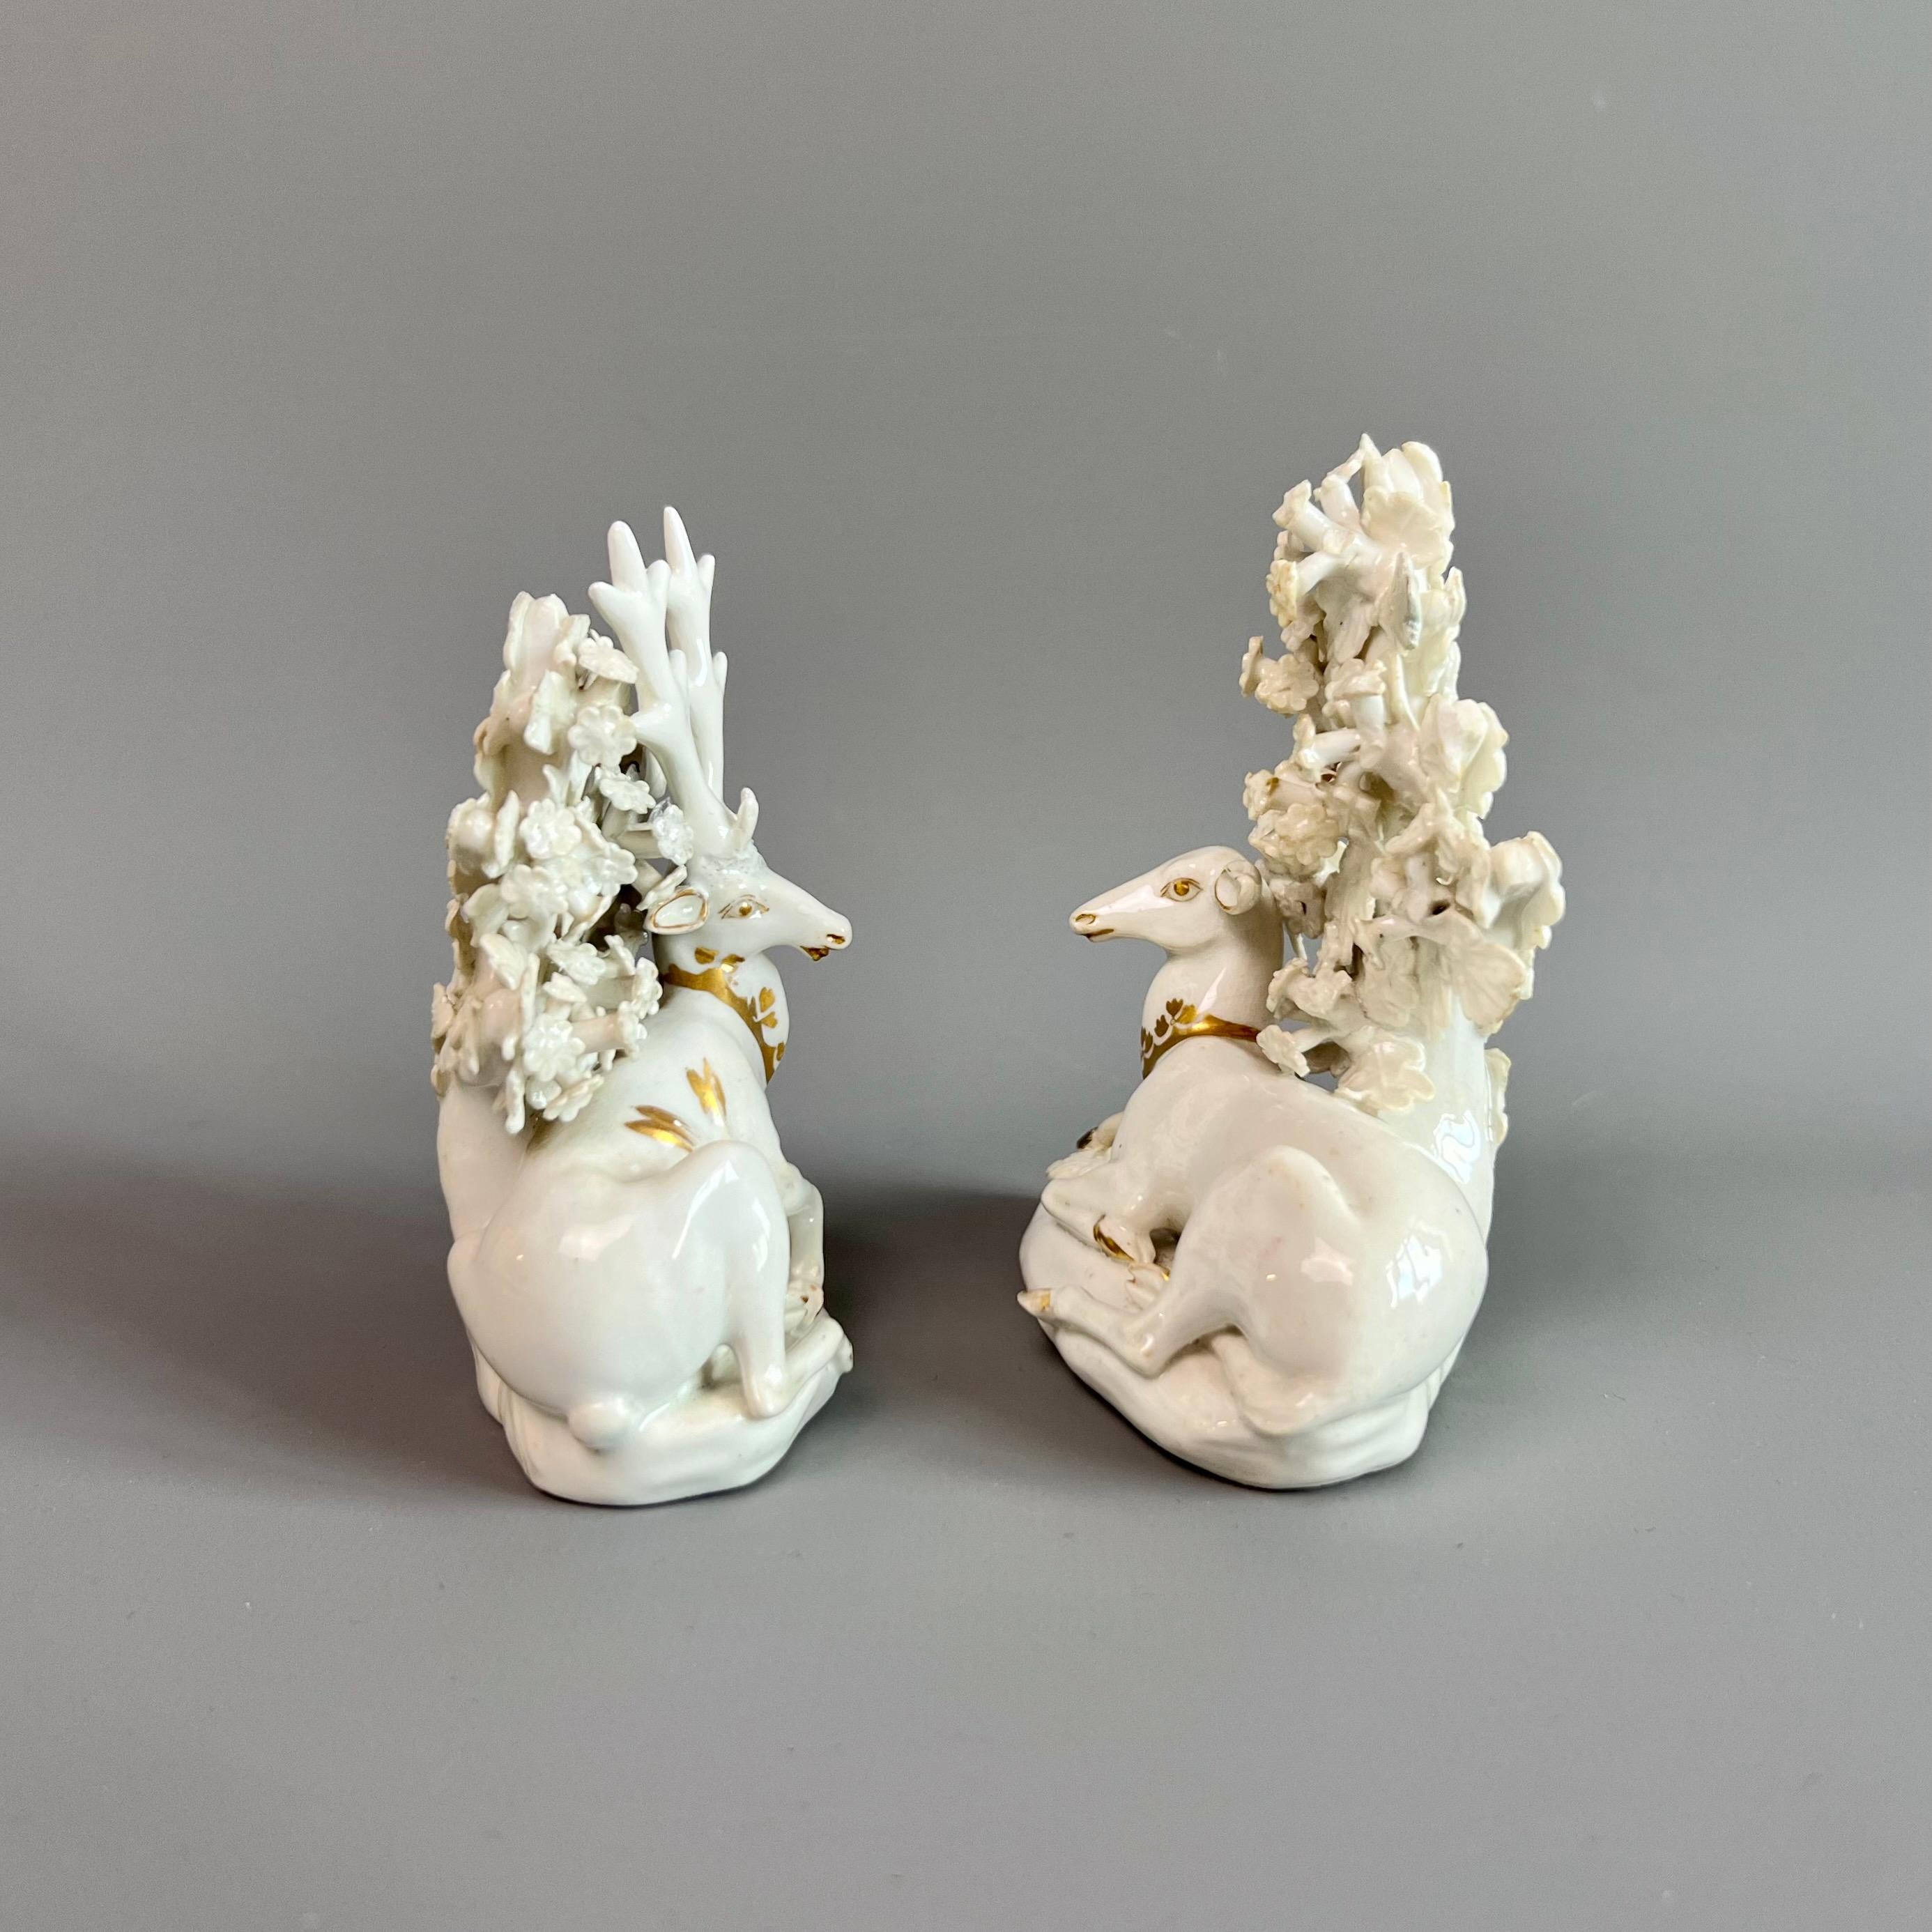 Voici une très charmante paire de figurines en porcelaine représentant un cerf et une biche, probablement fondues.  par Derby vers 1760 et décoré par Bloor Derby en 1820. Les figurines sont en porcelaine blanche simple avec des accents dorés